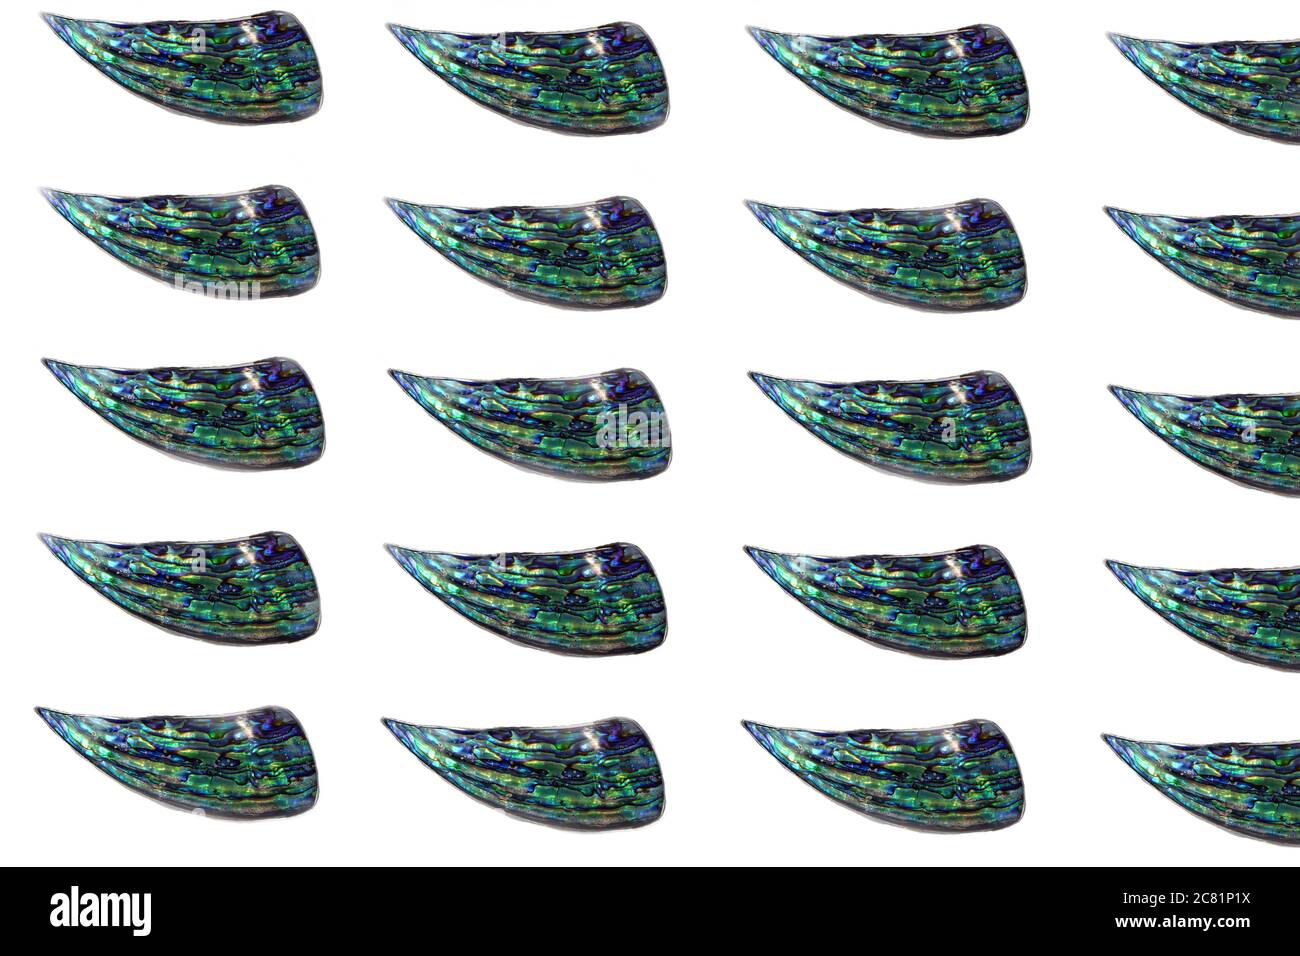 Image de patron ou d'abstrait pf bleu poli surface des coquilles de mollusques nacre isolées sur fond blanc. Tranches de nacre poli Banque D'Images